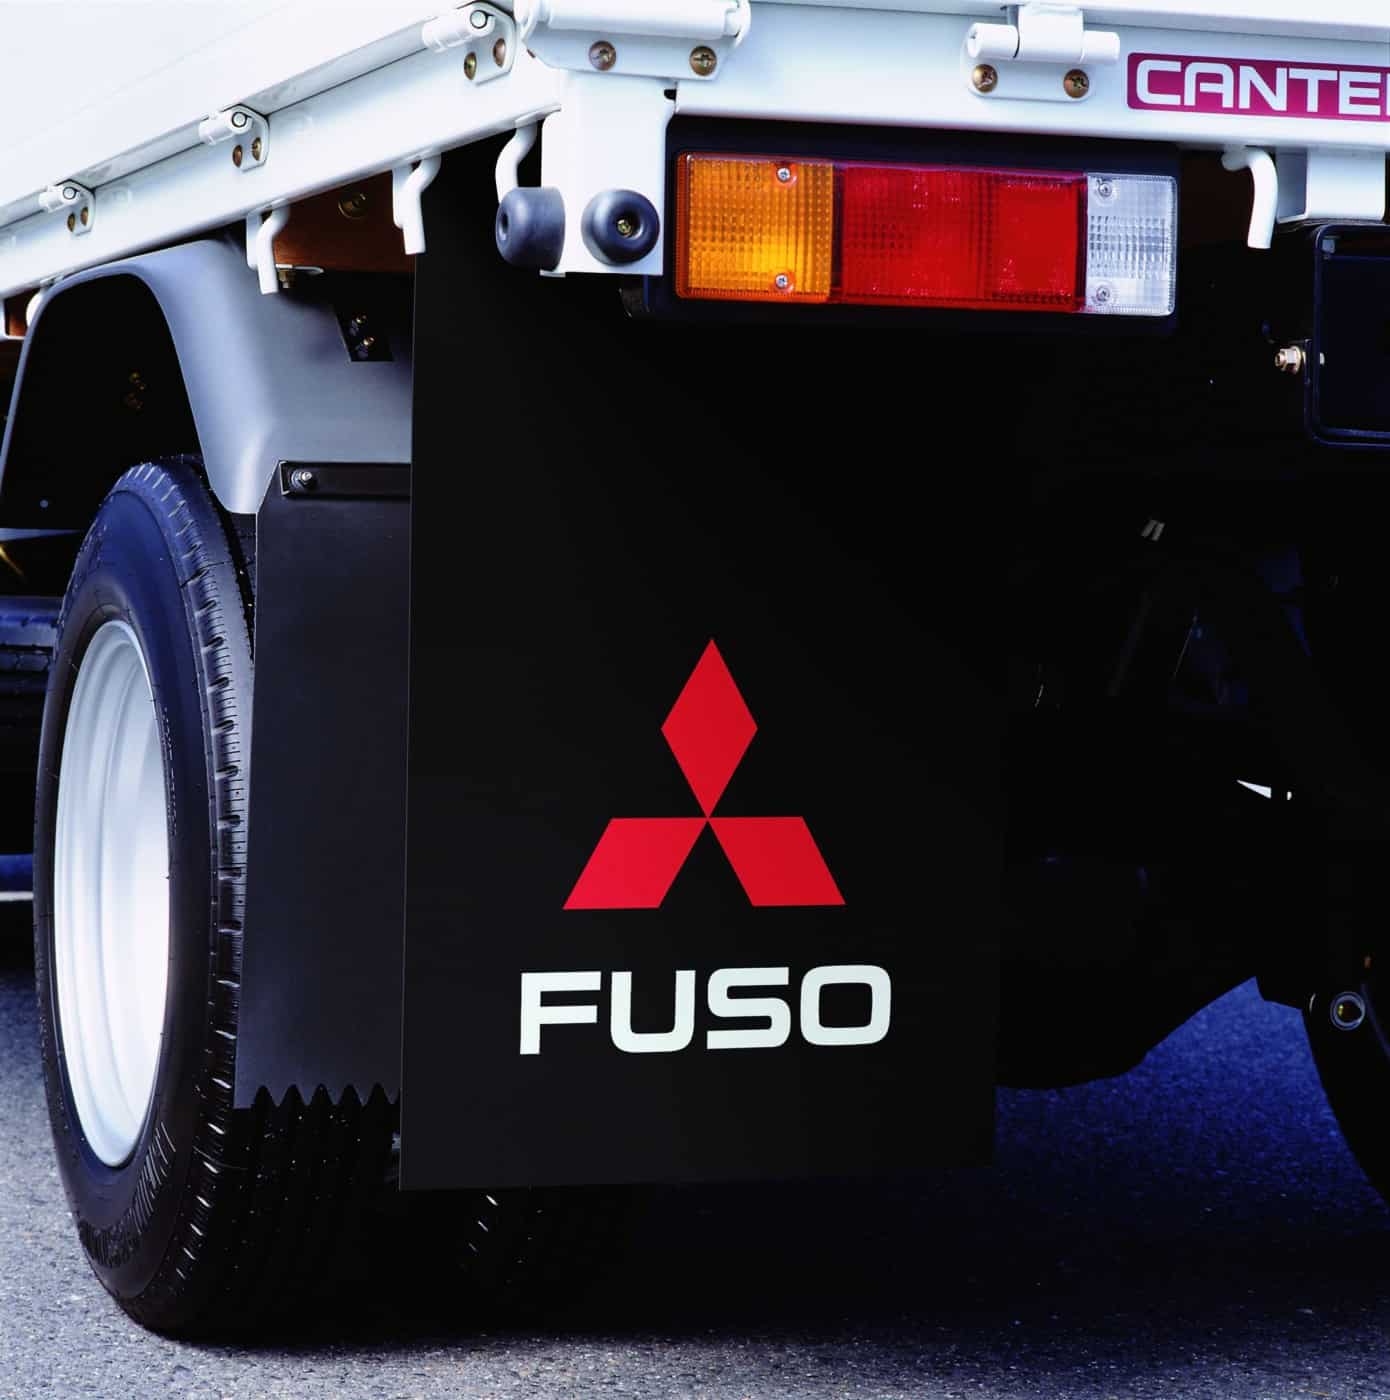 FUSO-roiskeläpät suojaavat ajoneuvoa, matkustajia, muita ajoneuvoja ja jalankulkijoita renkaiden nostattamalta kuralta ja lialta.